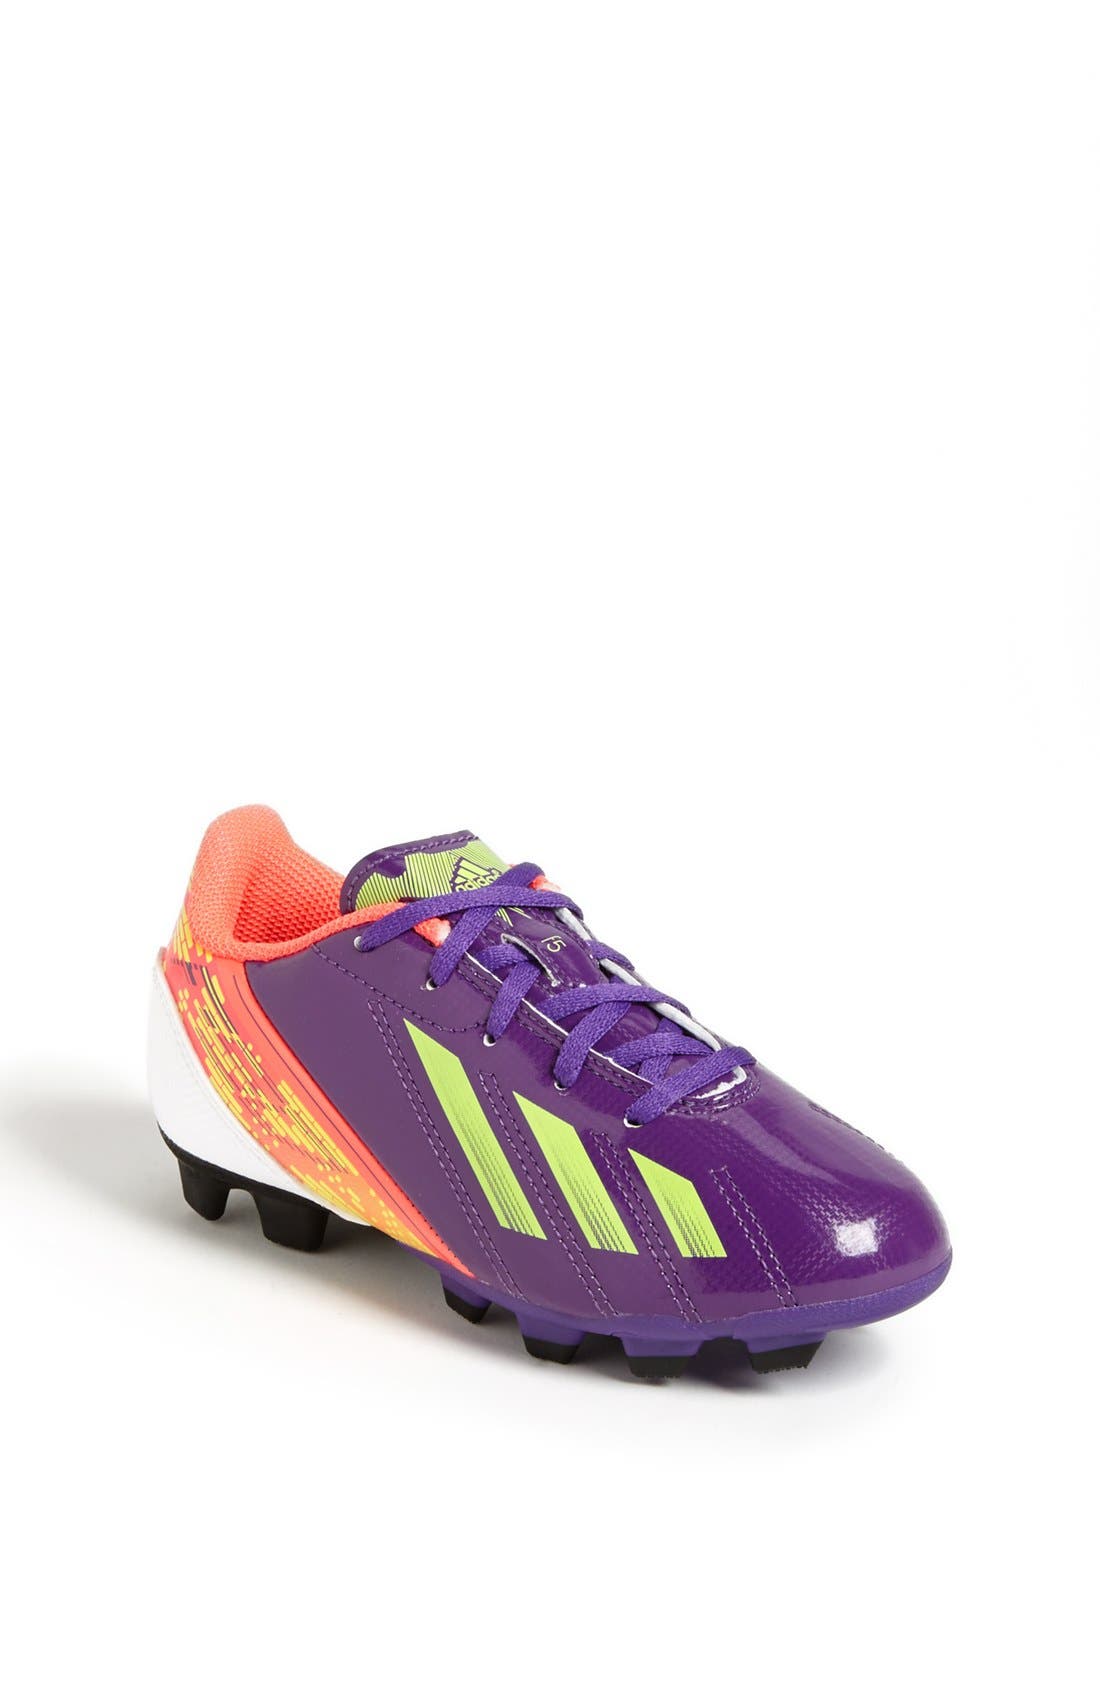 adidas 'F5 TRX FG' Soccer Cleat 